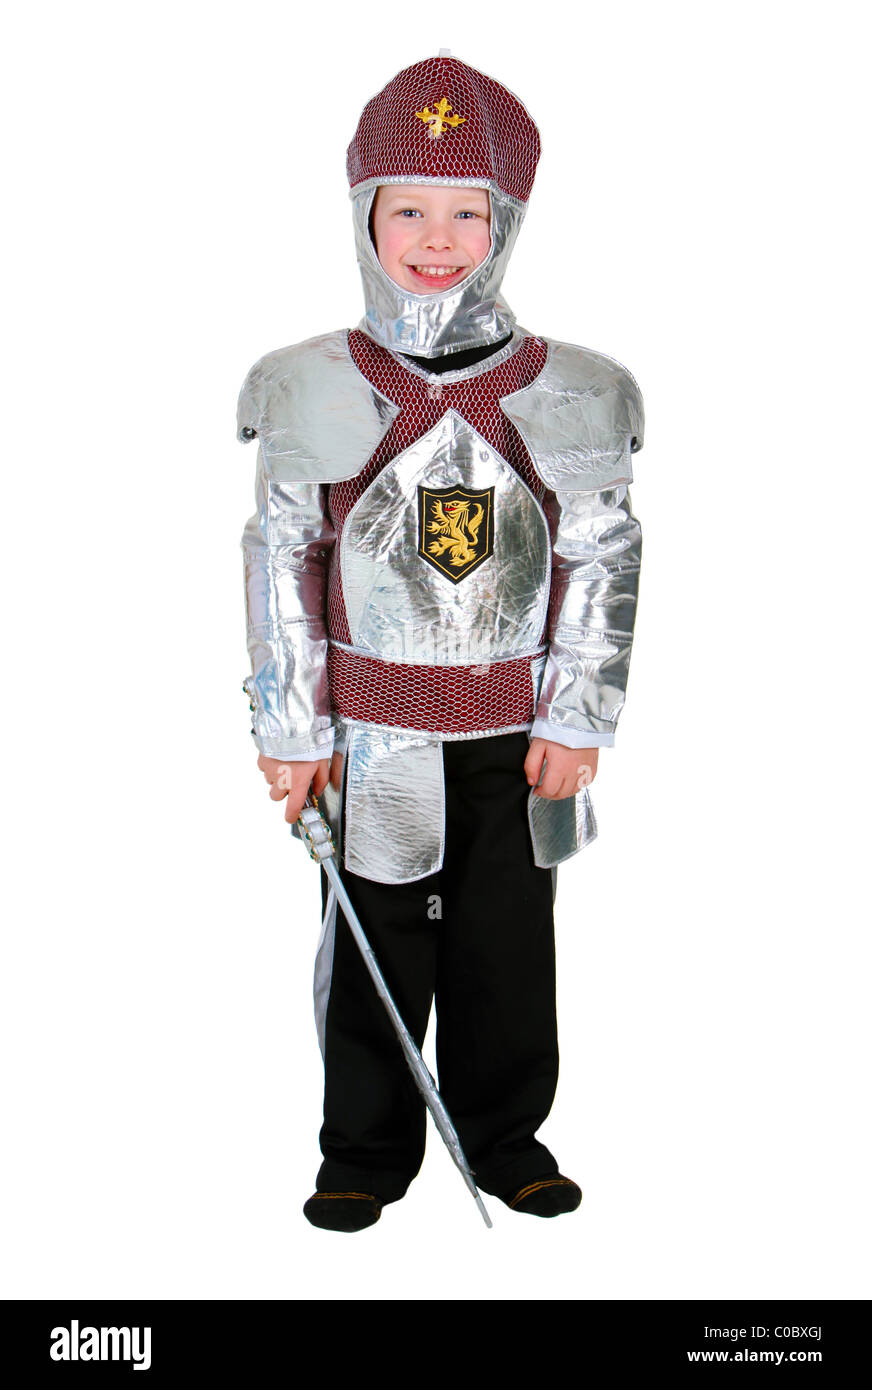 Boy knight costume Banque d'images détourées - Alamy